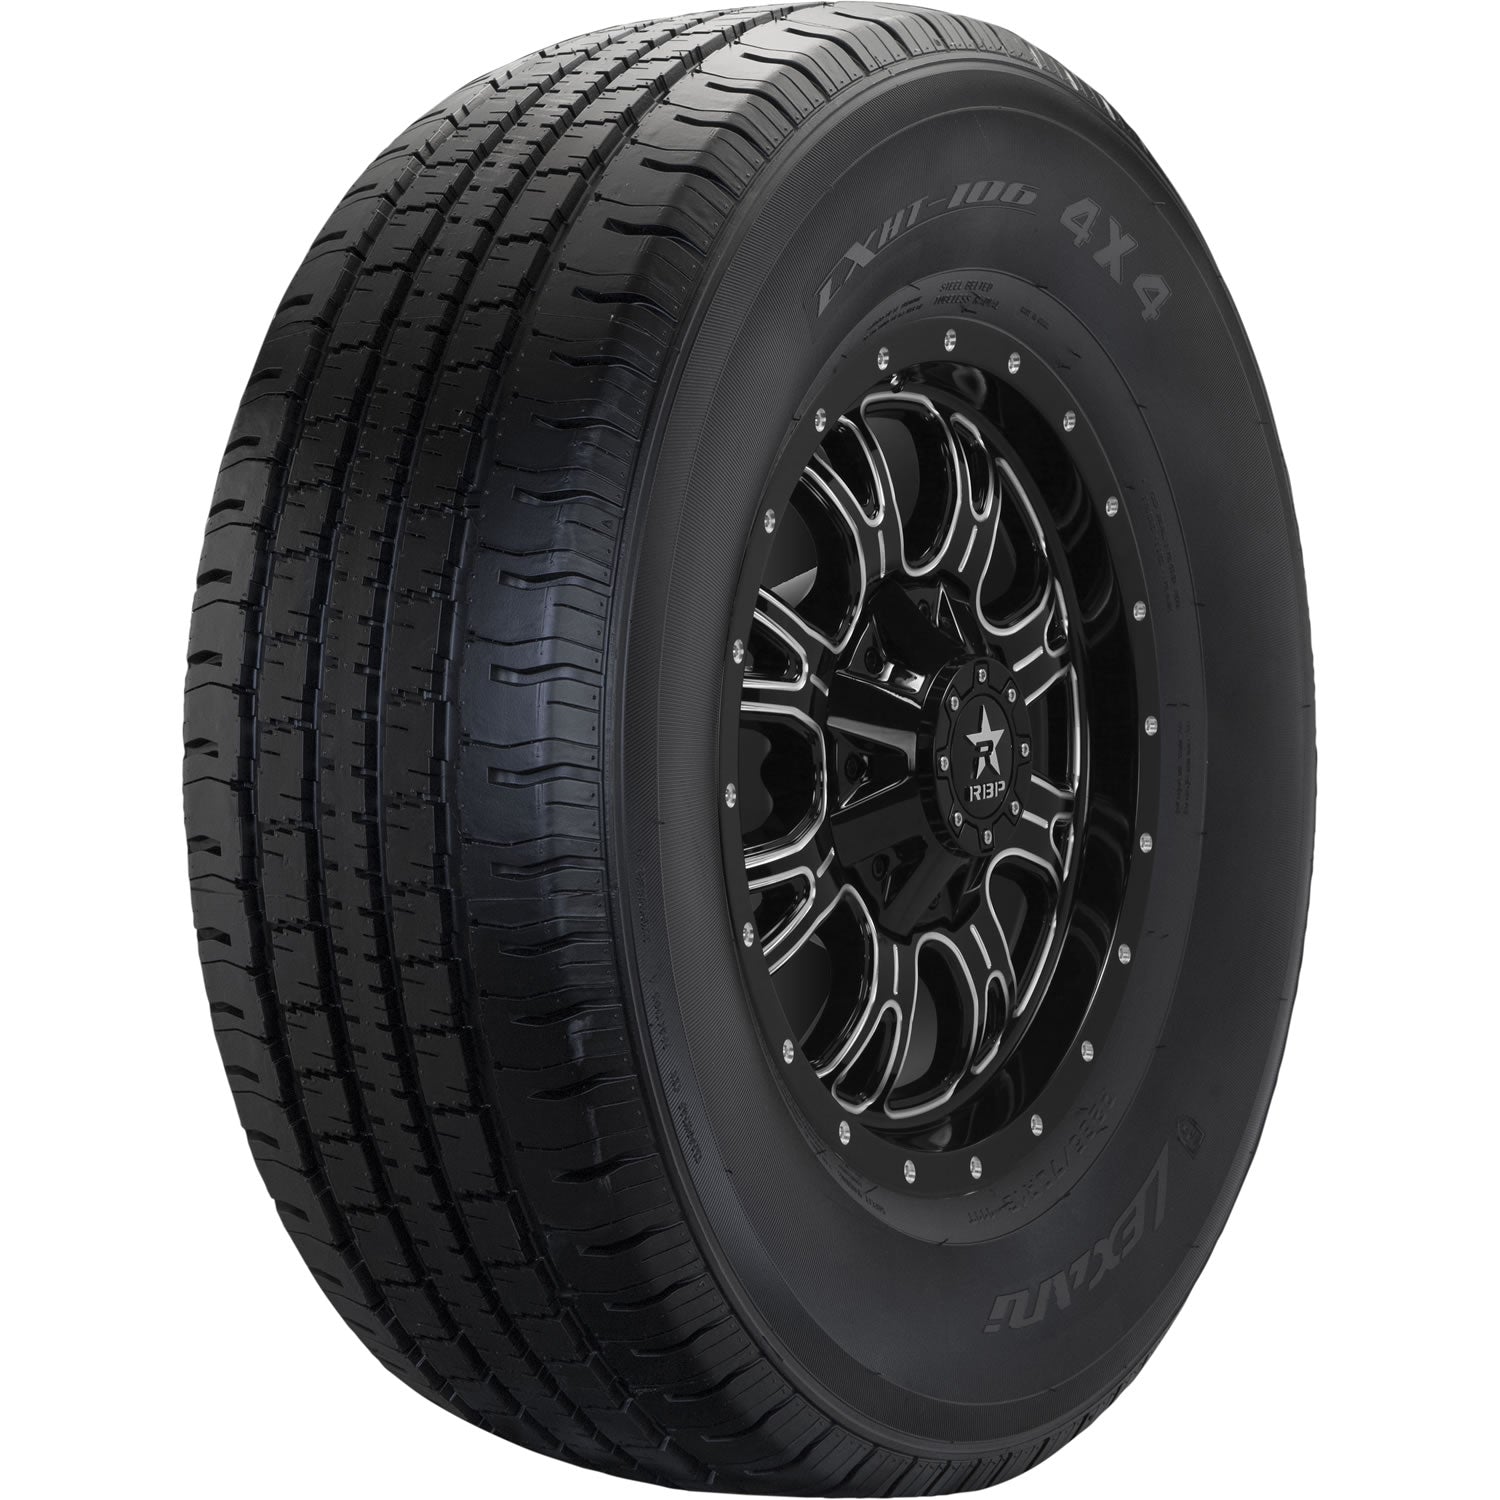 LEXANI LXHT-106 LT215/85R16 (30.4X8.5R 16) Tires